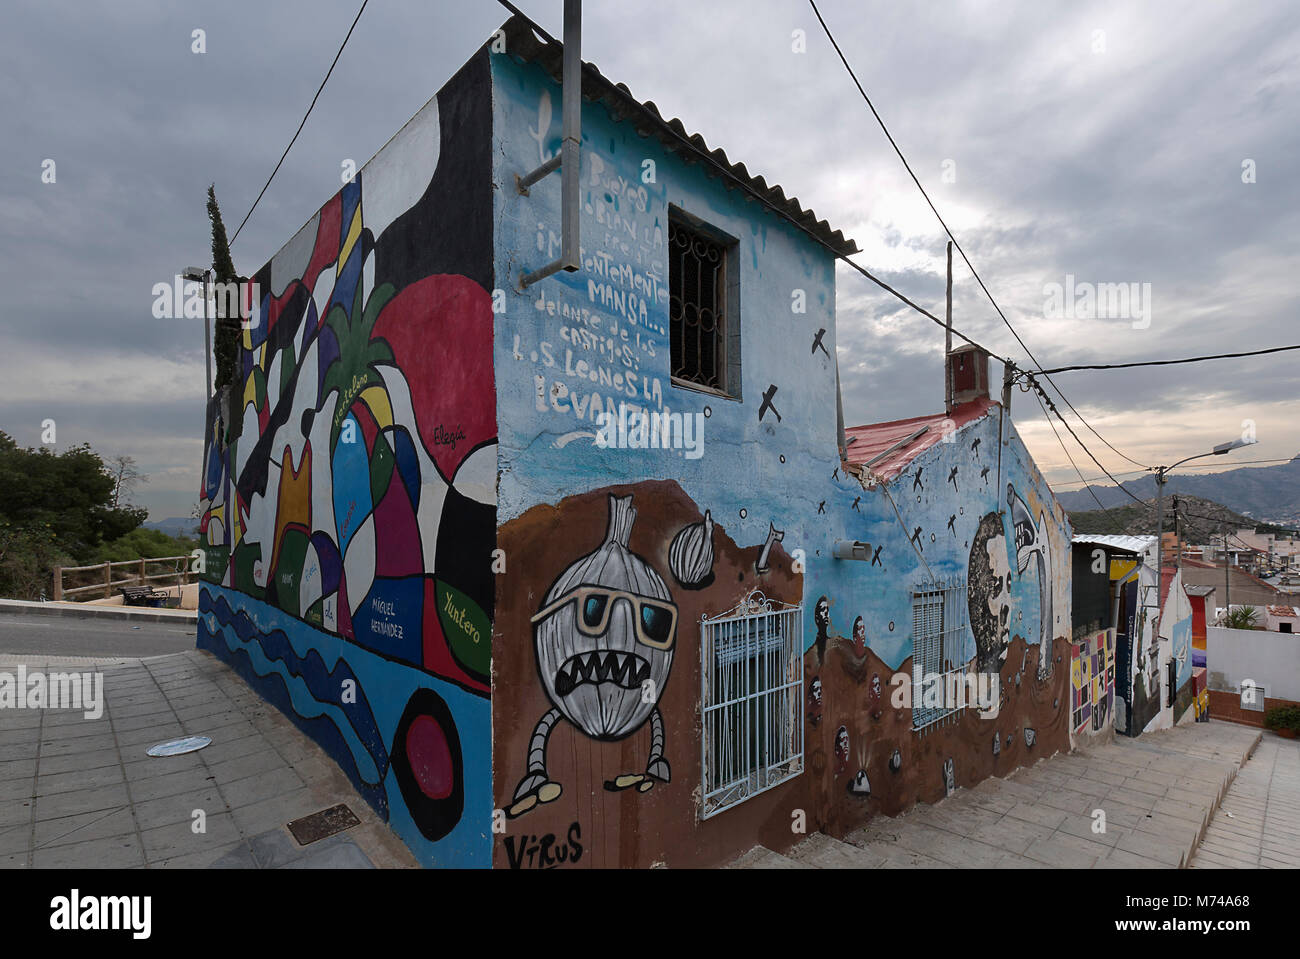 Orihuela, Espagne. 26 février 2018 : peintures murales de San Isidro en hommage à Miguel Hernandez dans la ville d'Orihuela, province d'Alicante, Espagne. Banque D'Images